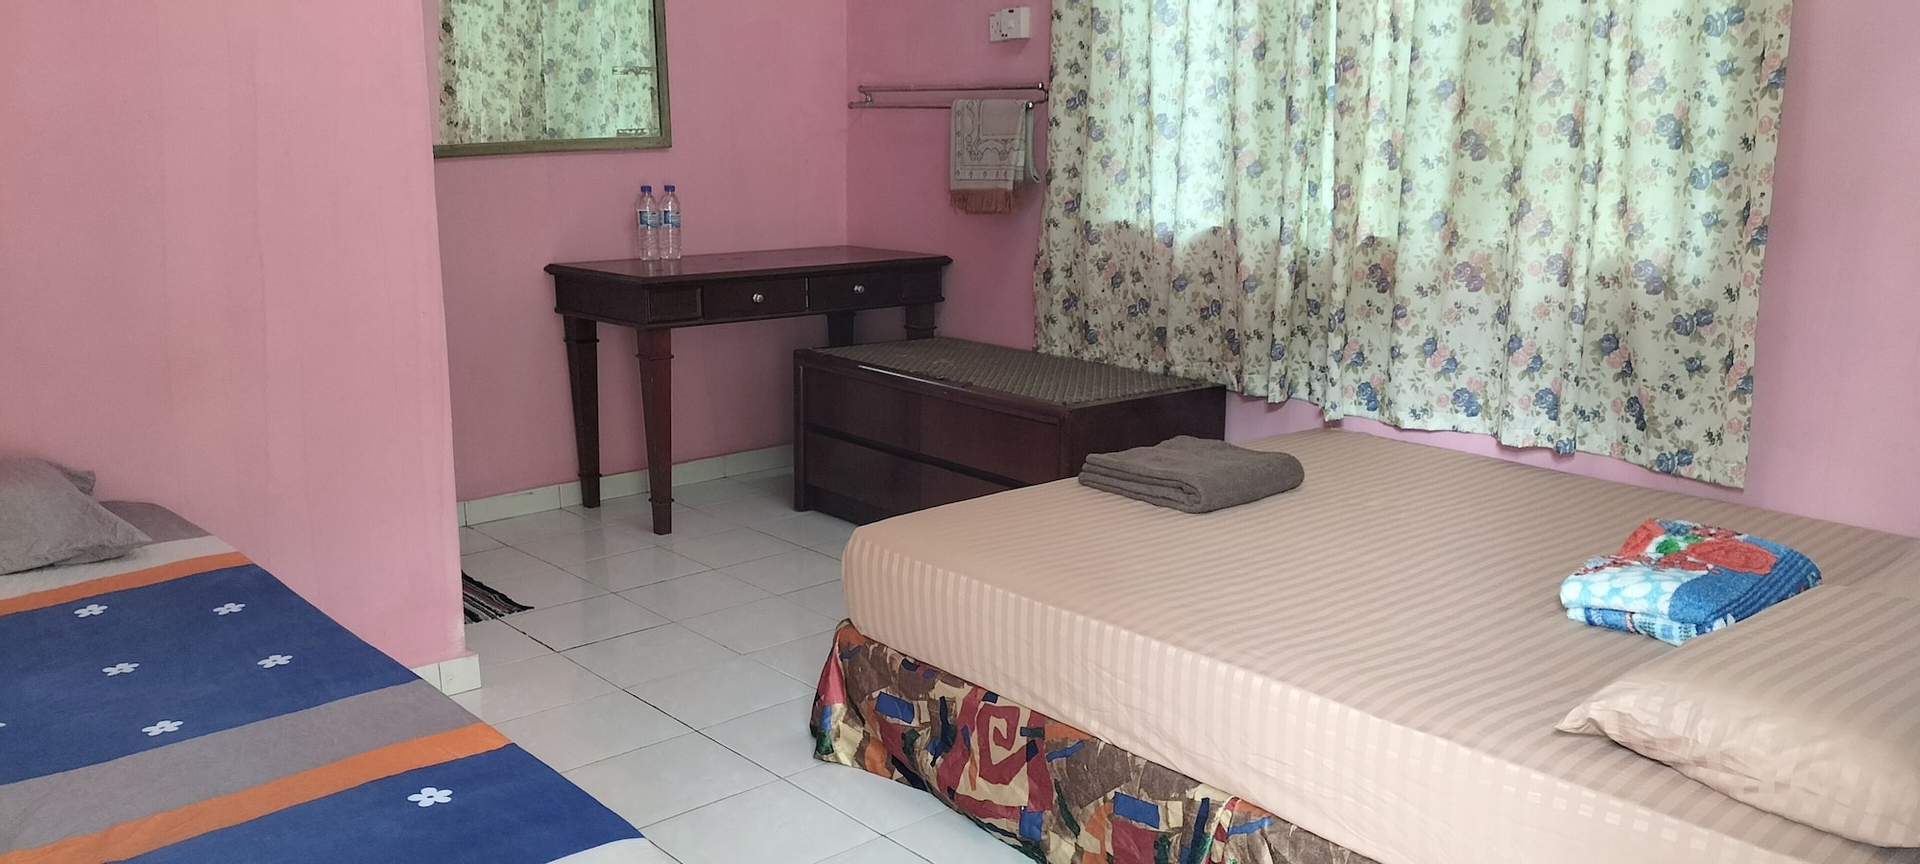 Bedroom 1, Iman D'Semungkis Resort & Training Cente, Hulu Langat